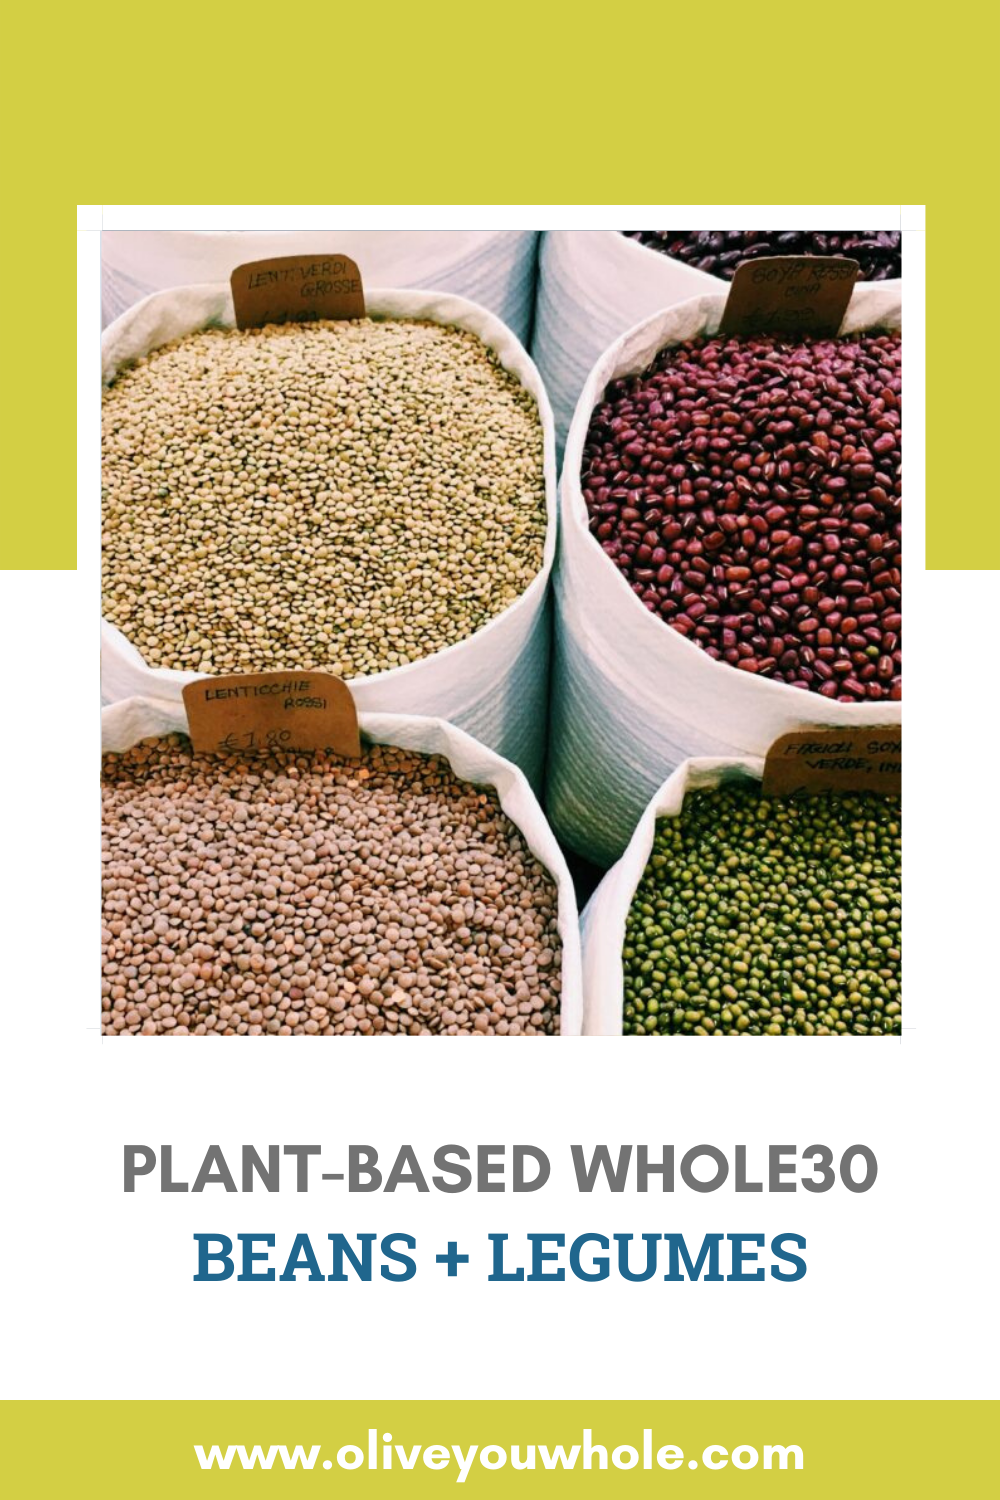 Plant-Based Whole30 Beans + Legumes Pinterest